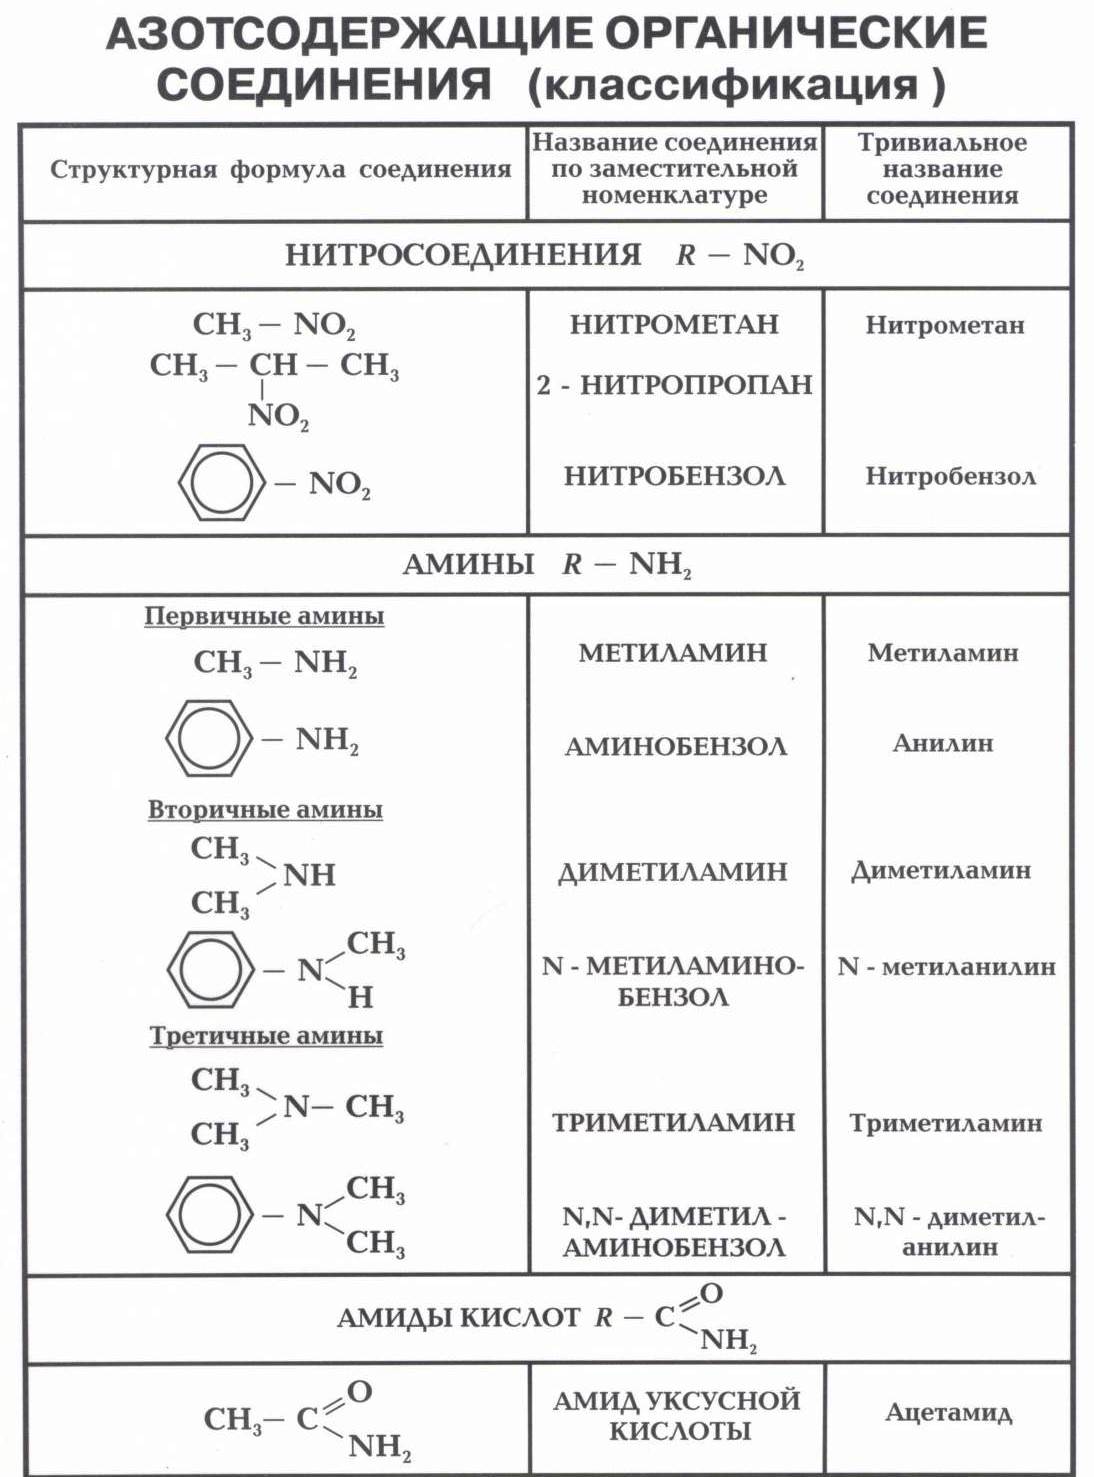 Сколько органических веществ известно. Химические свойства азотсодержащих органических соединений таблица. Химия 10 класс номенклатура органических веществ. Классификация азотсодержащих органических соединений таблица. Азотсодержащие органические соединения формула.